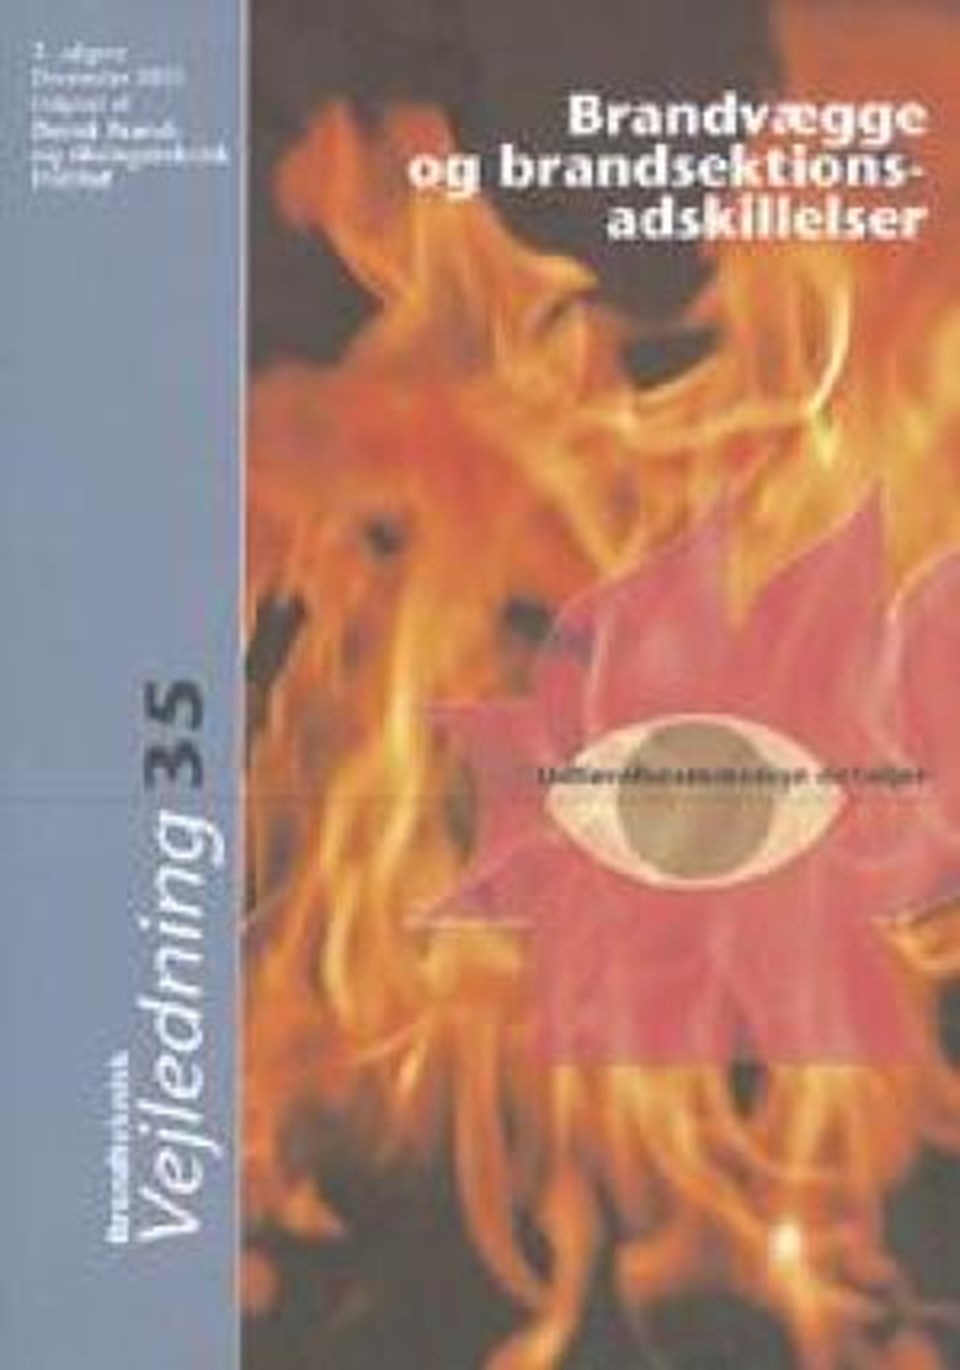 Brandvægge og brandsektionsadskillelser e-bog (1)